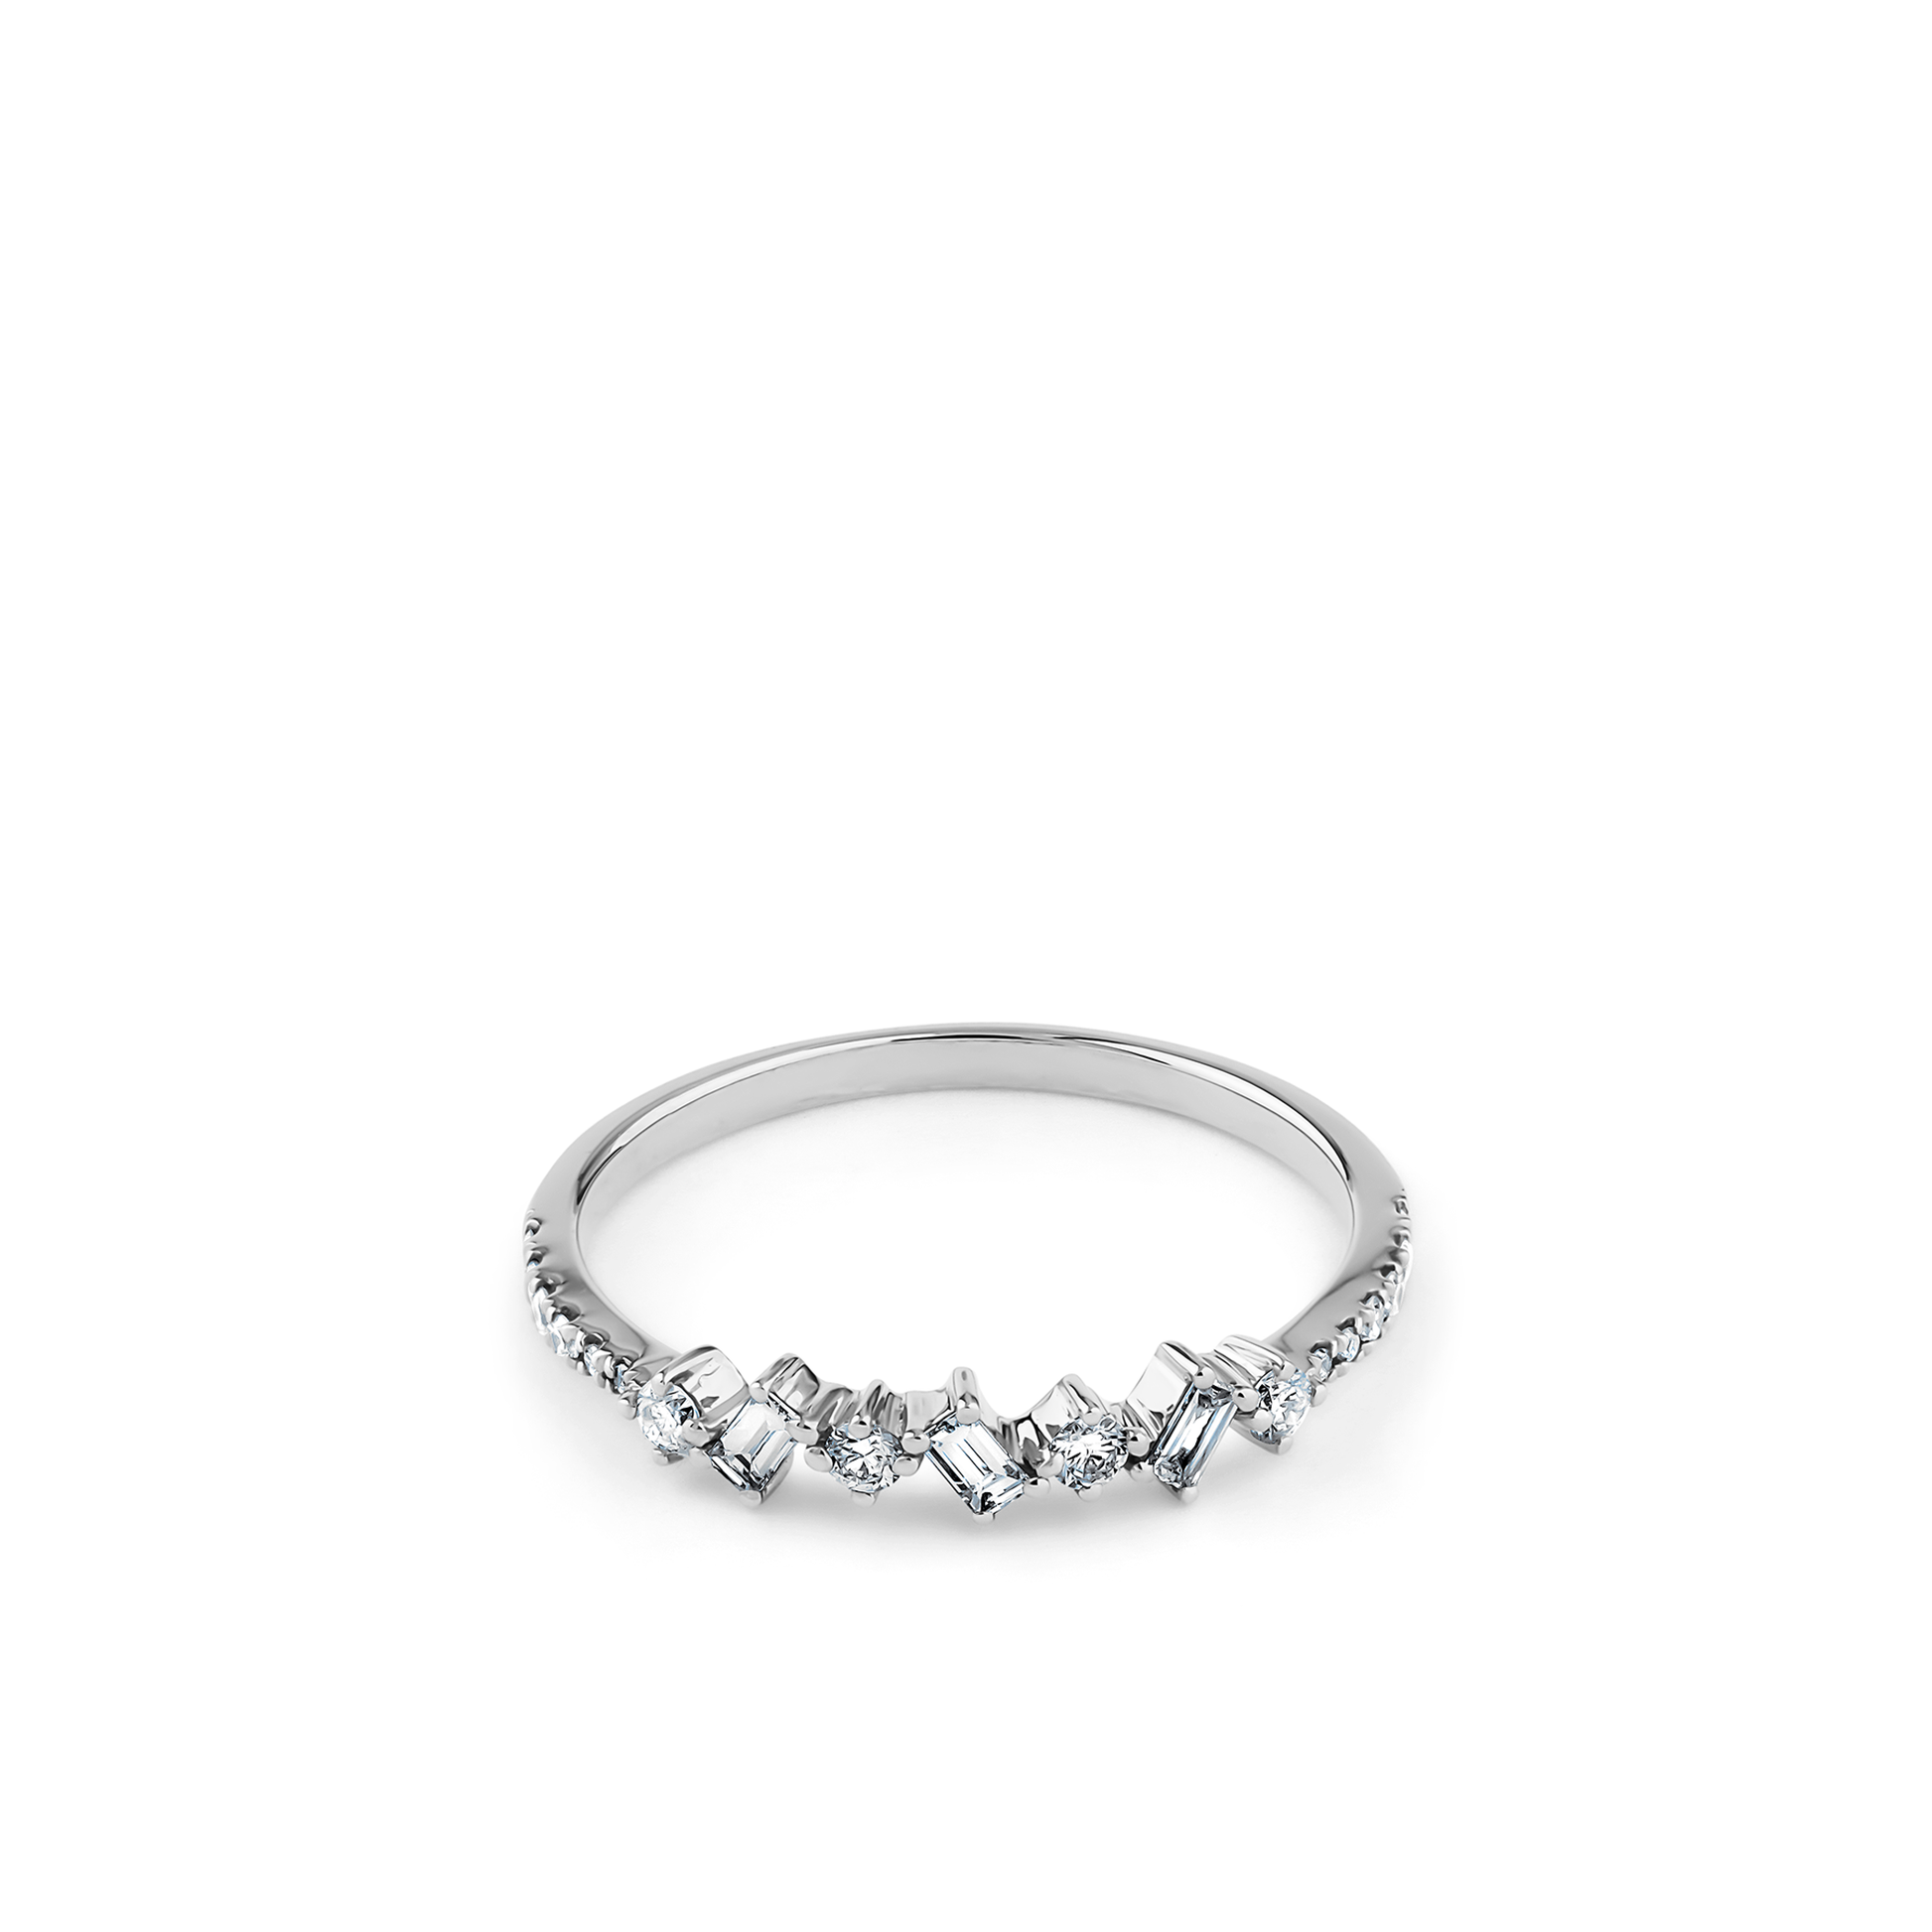 Oliver Heemeyer Nancy Diamond Ring made of 18k white gold.